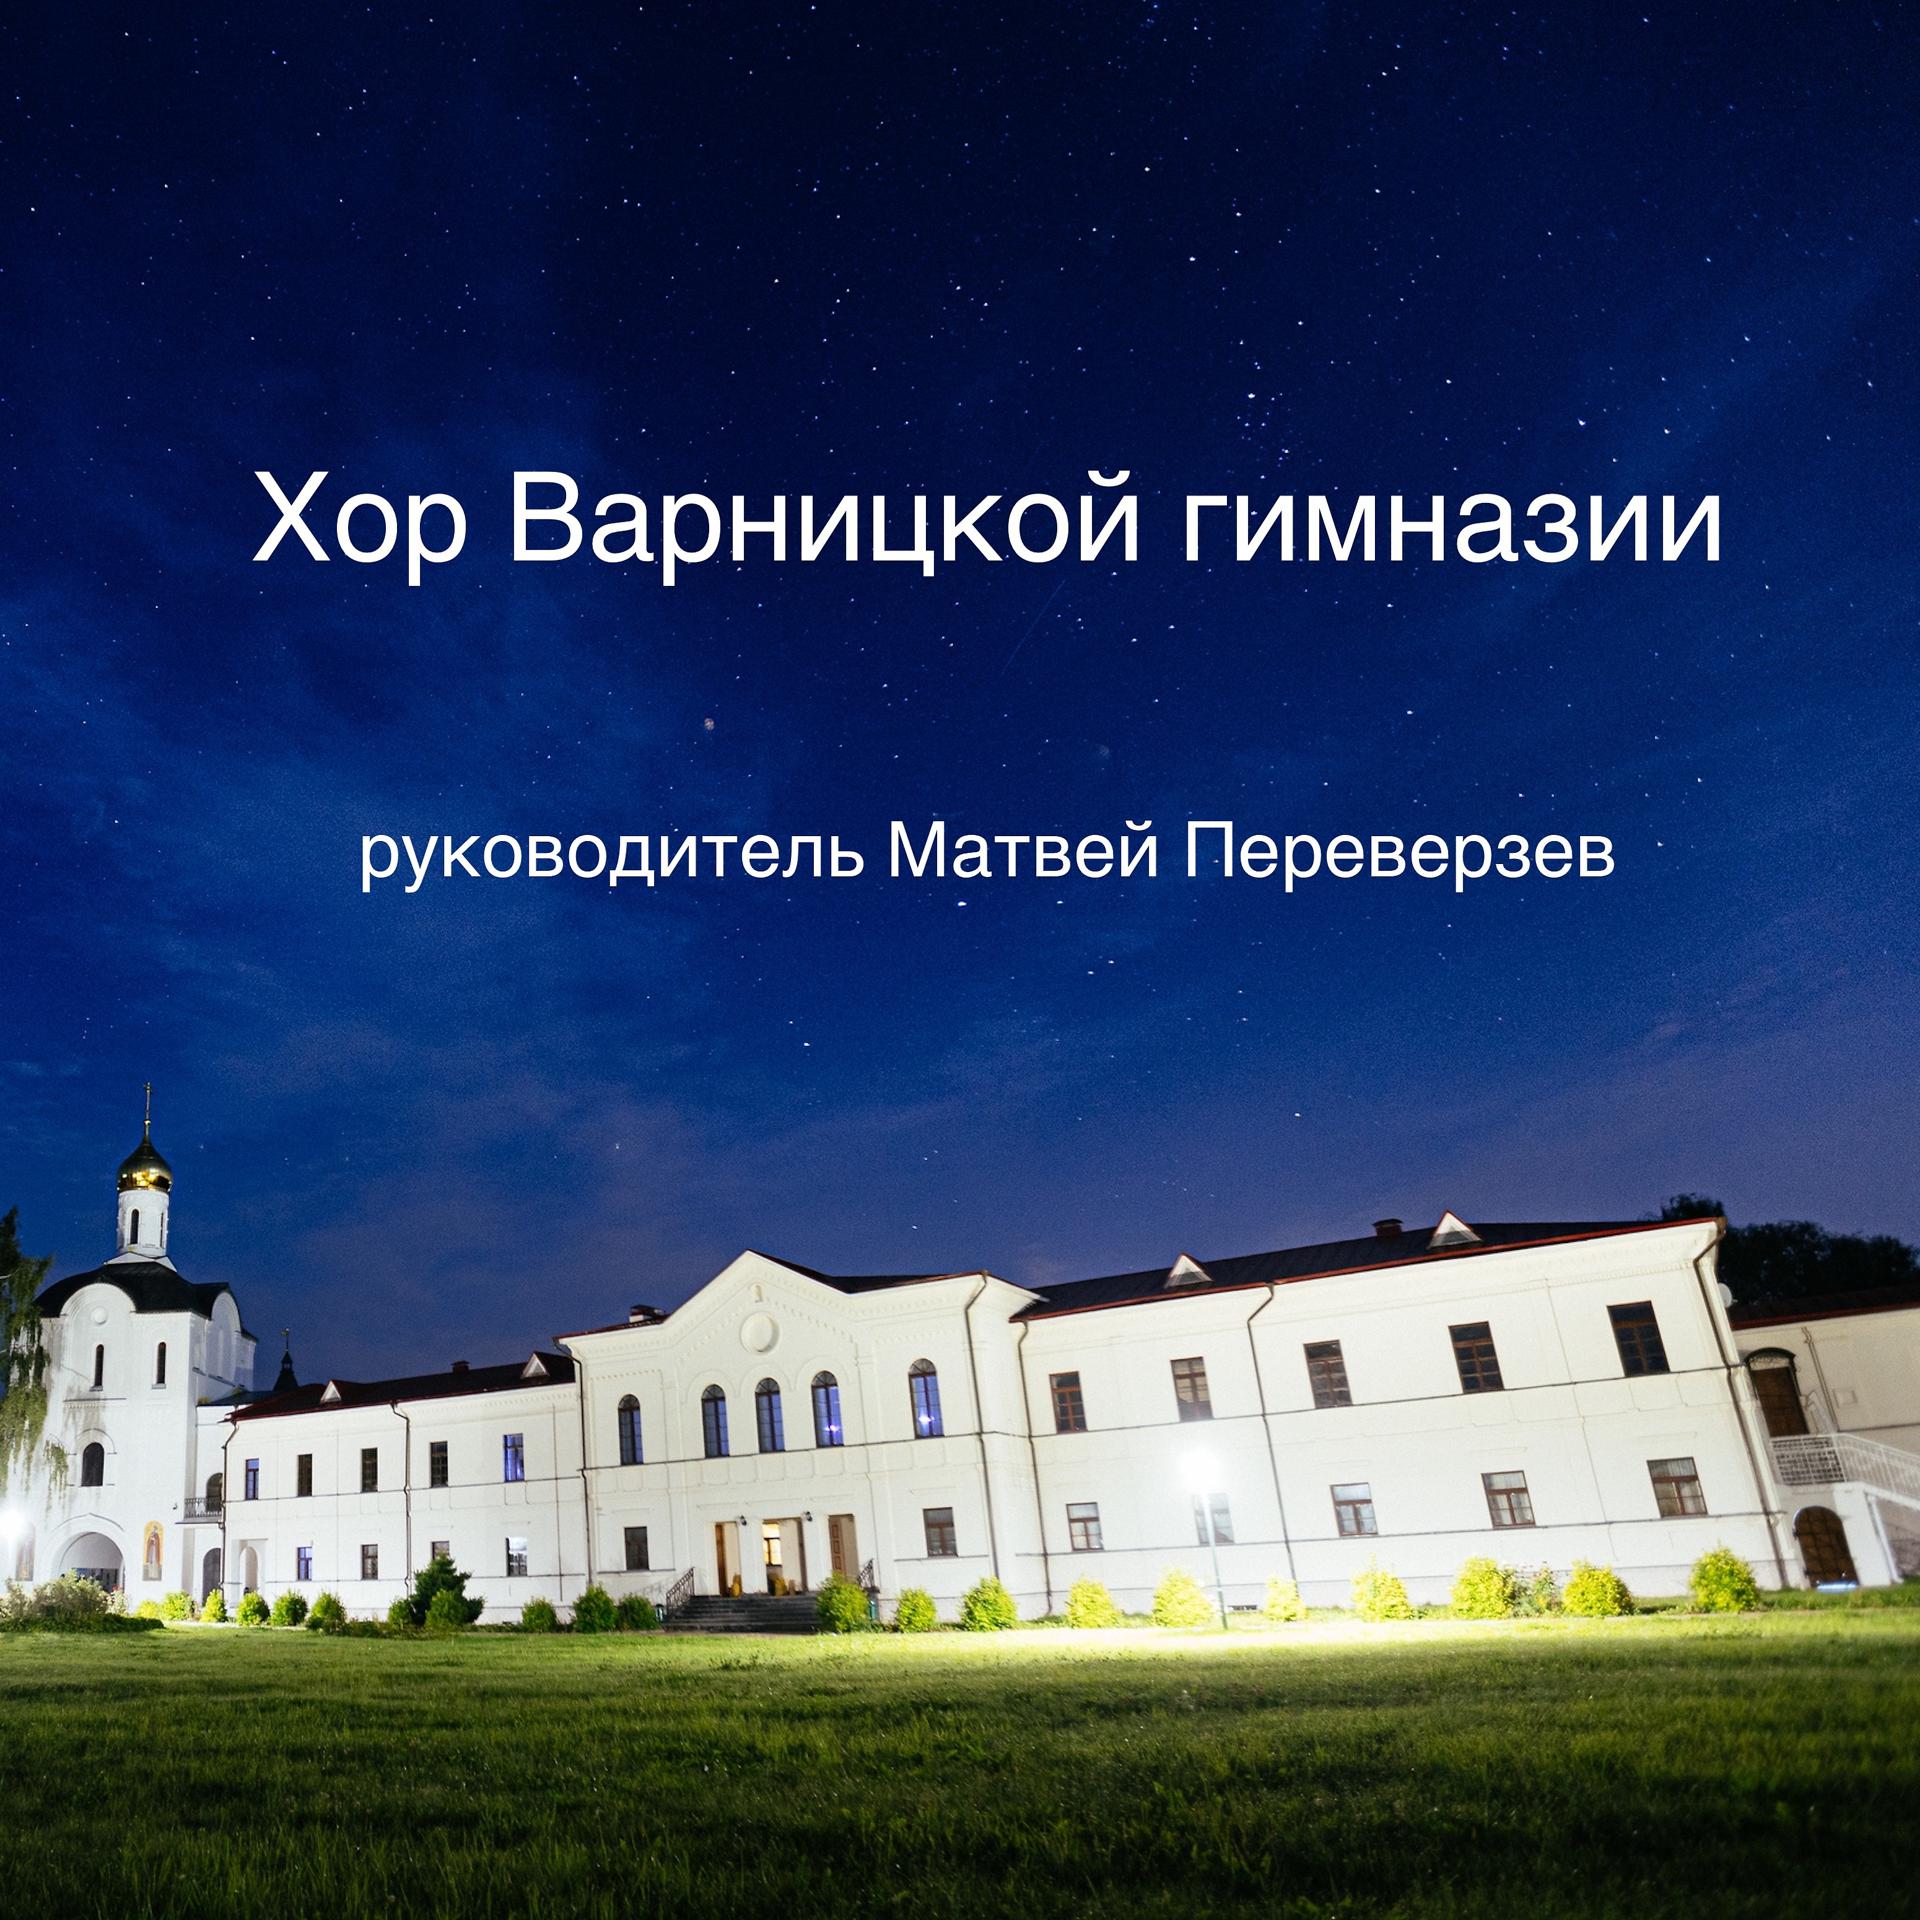 Варницкая гимназия